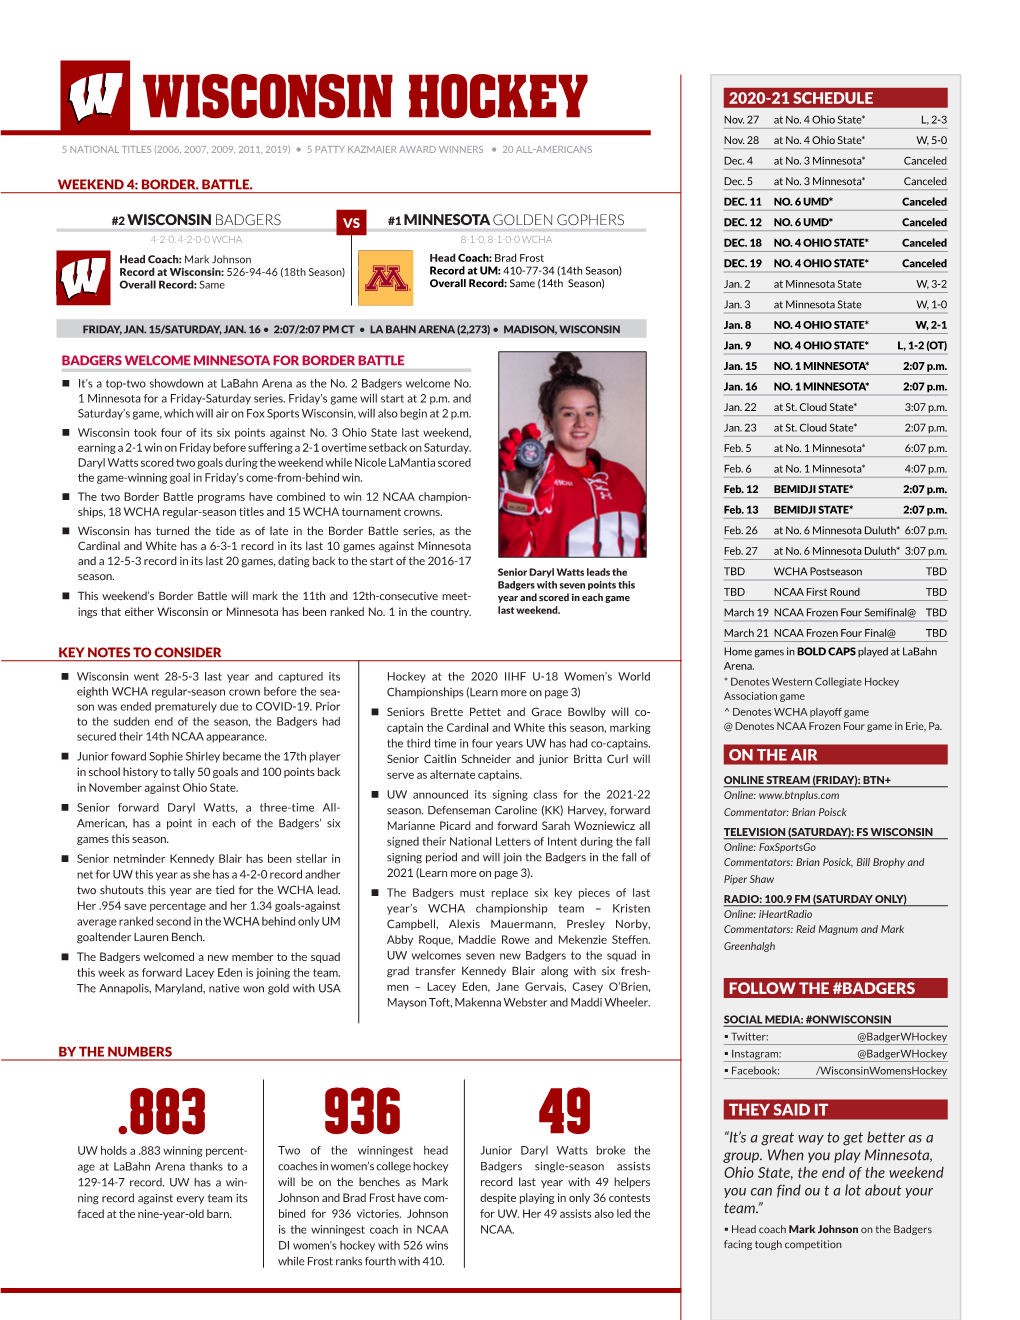 WISCONSIN Hockey 2020-21 SCHEDULE Nov